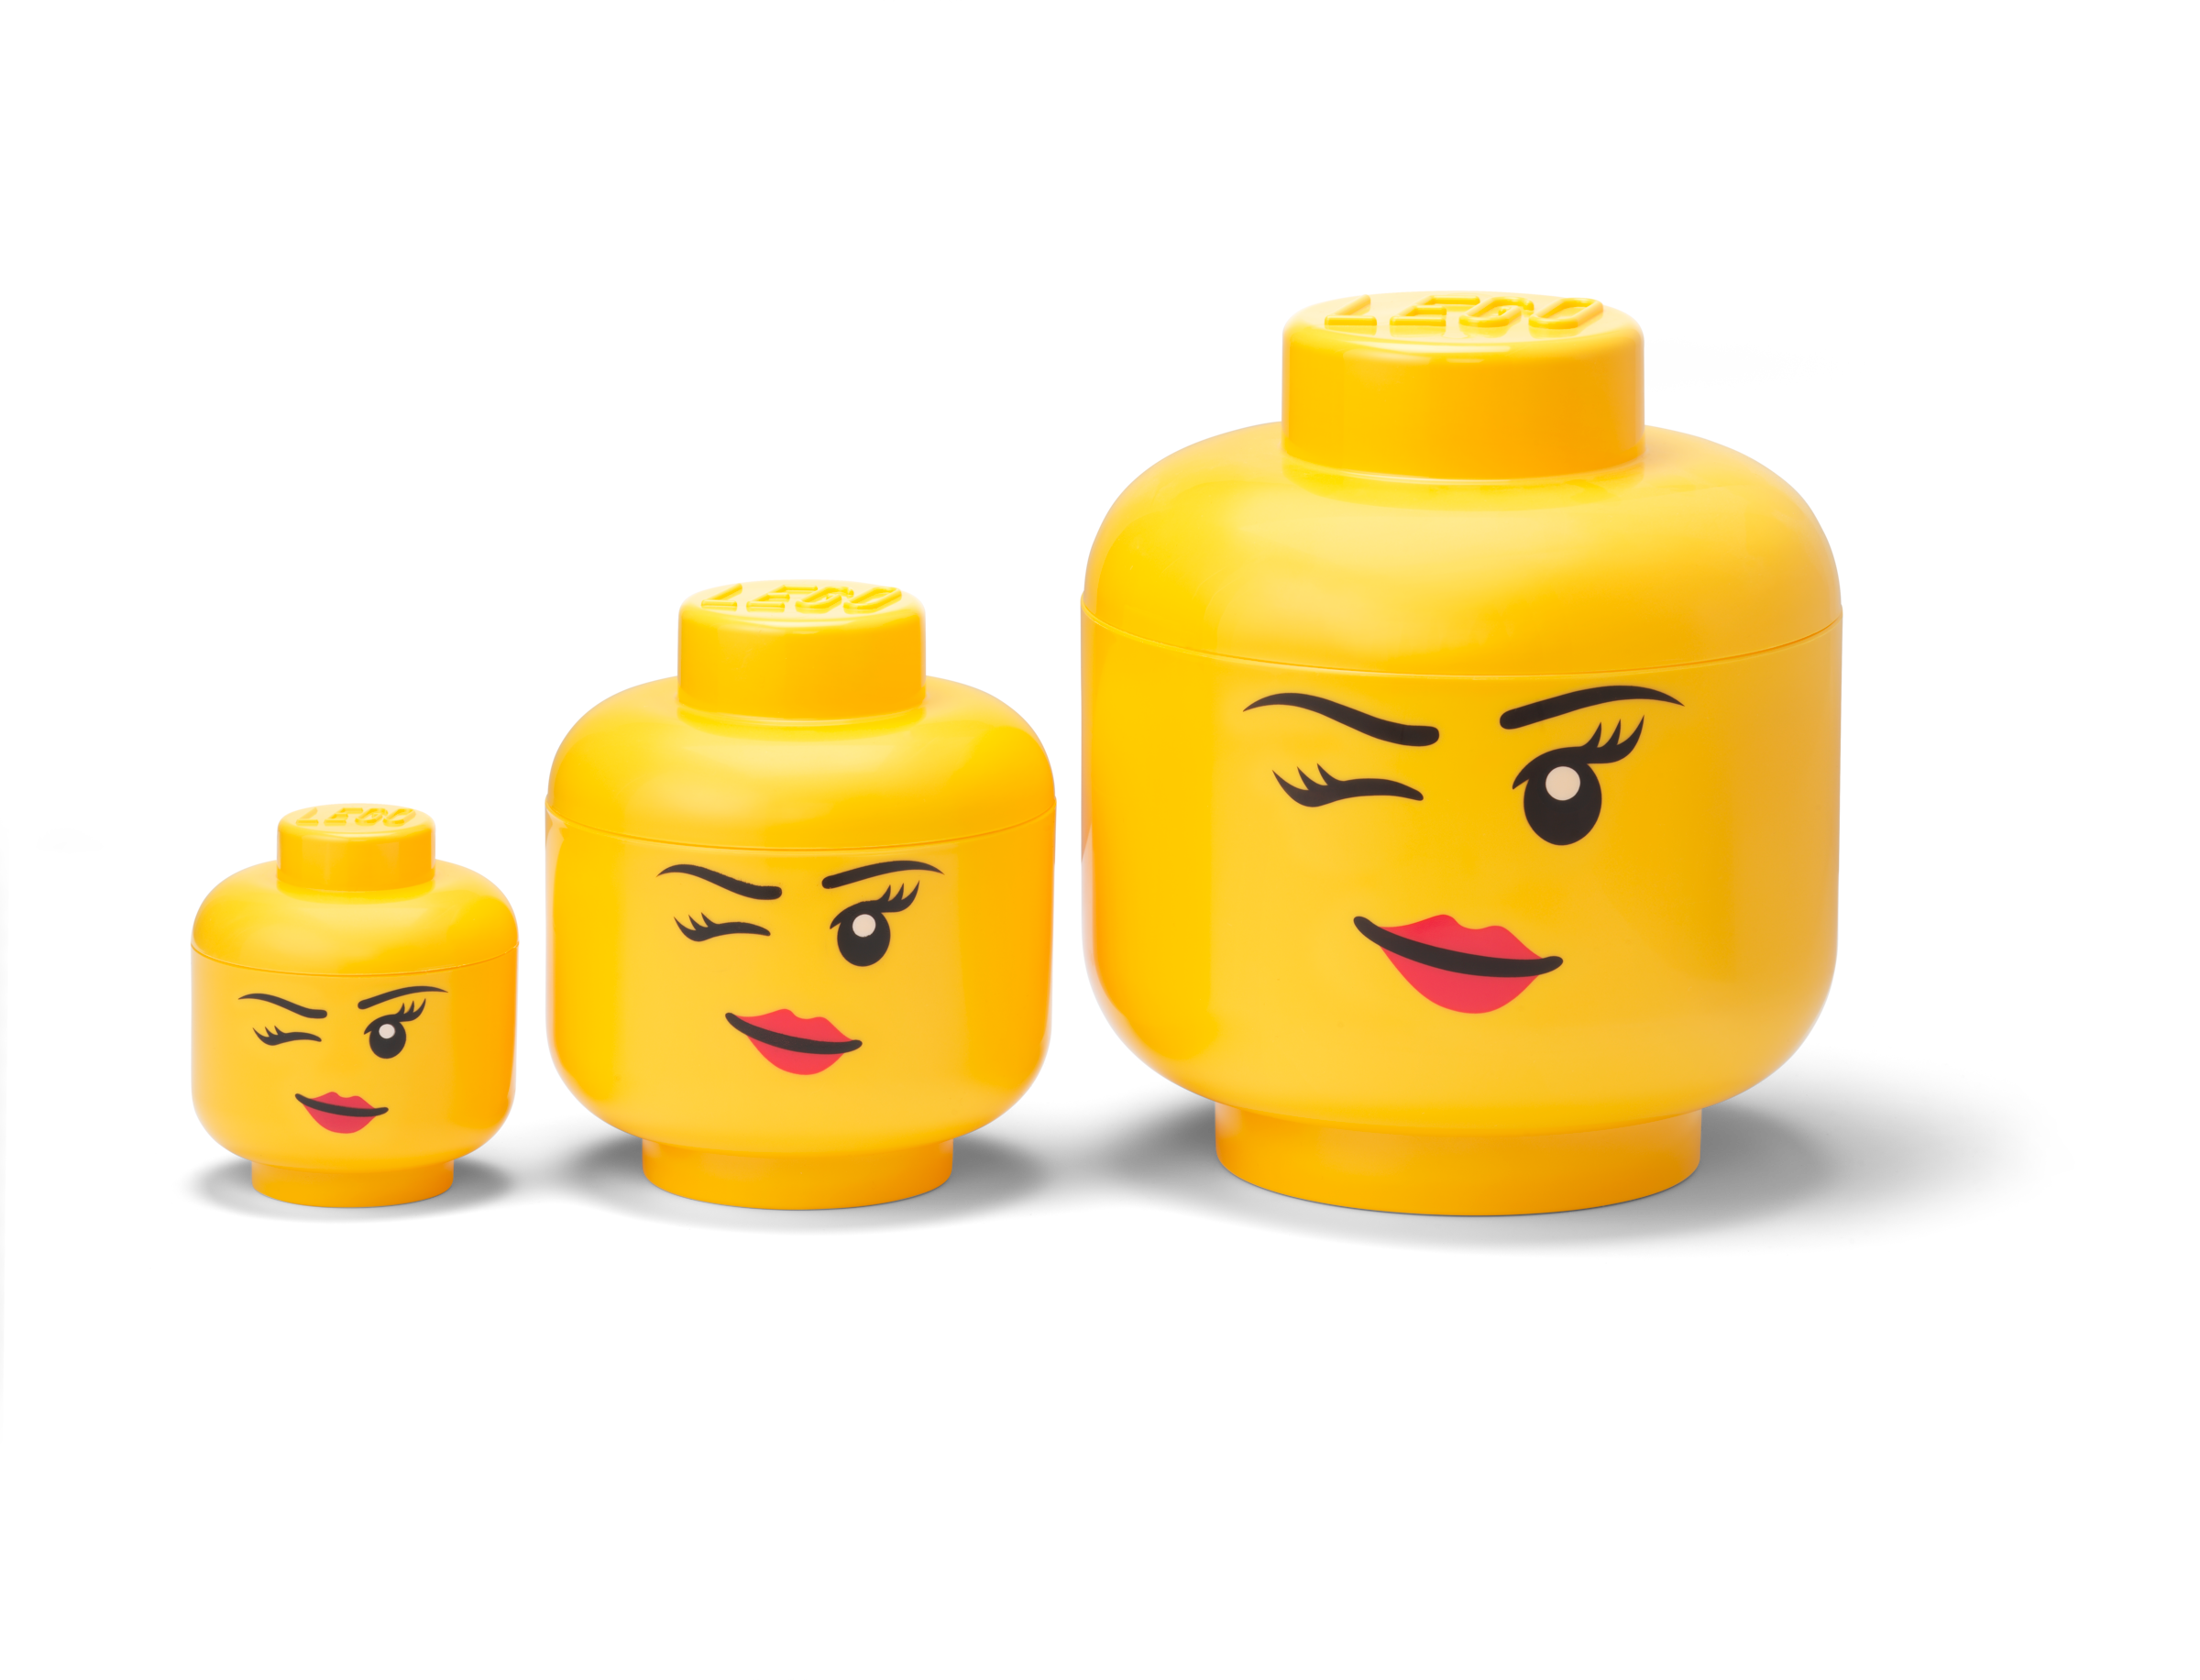 Testa contenitore LEGO – Mini (ammiccante) 5006211 – 9,99 €